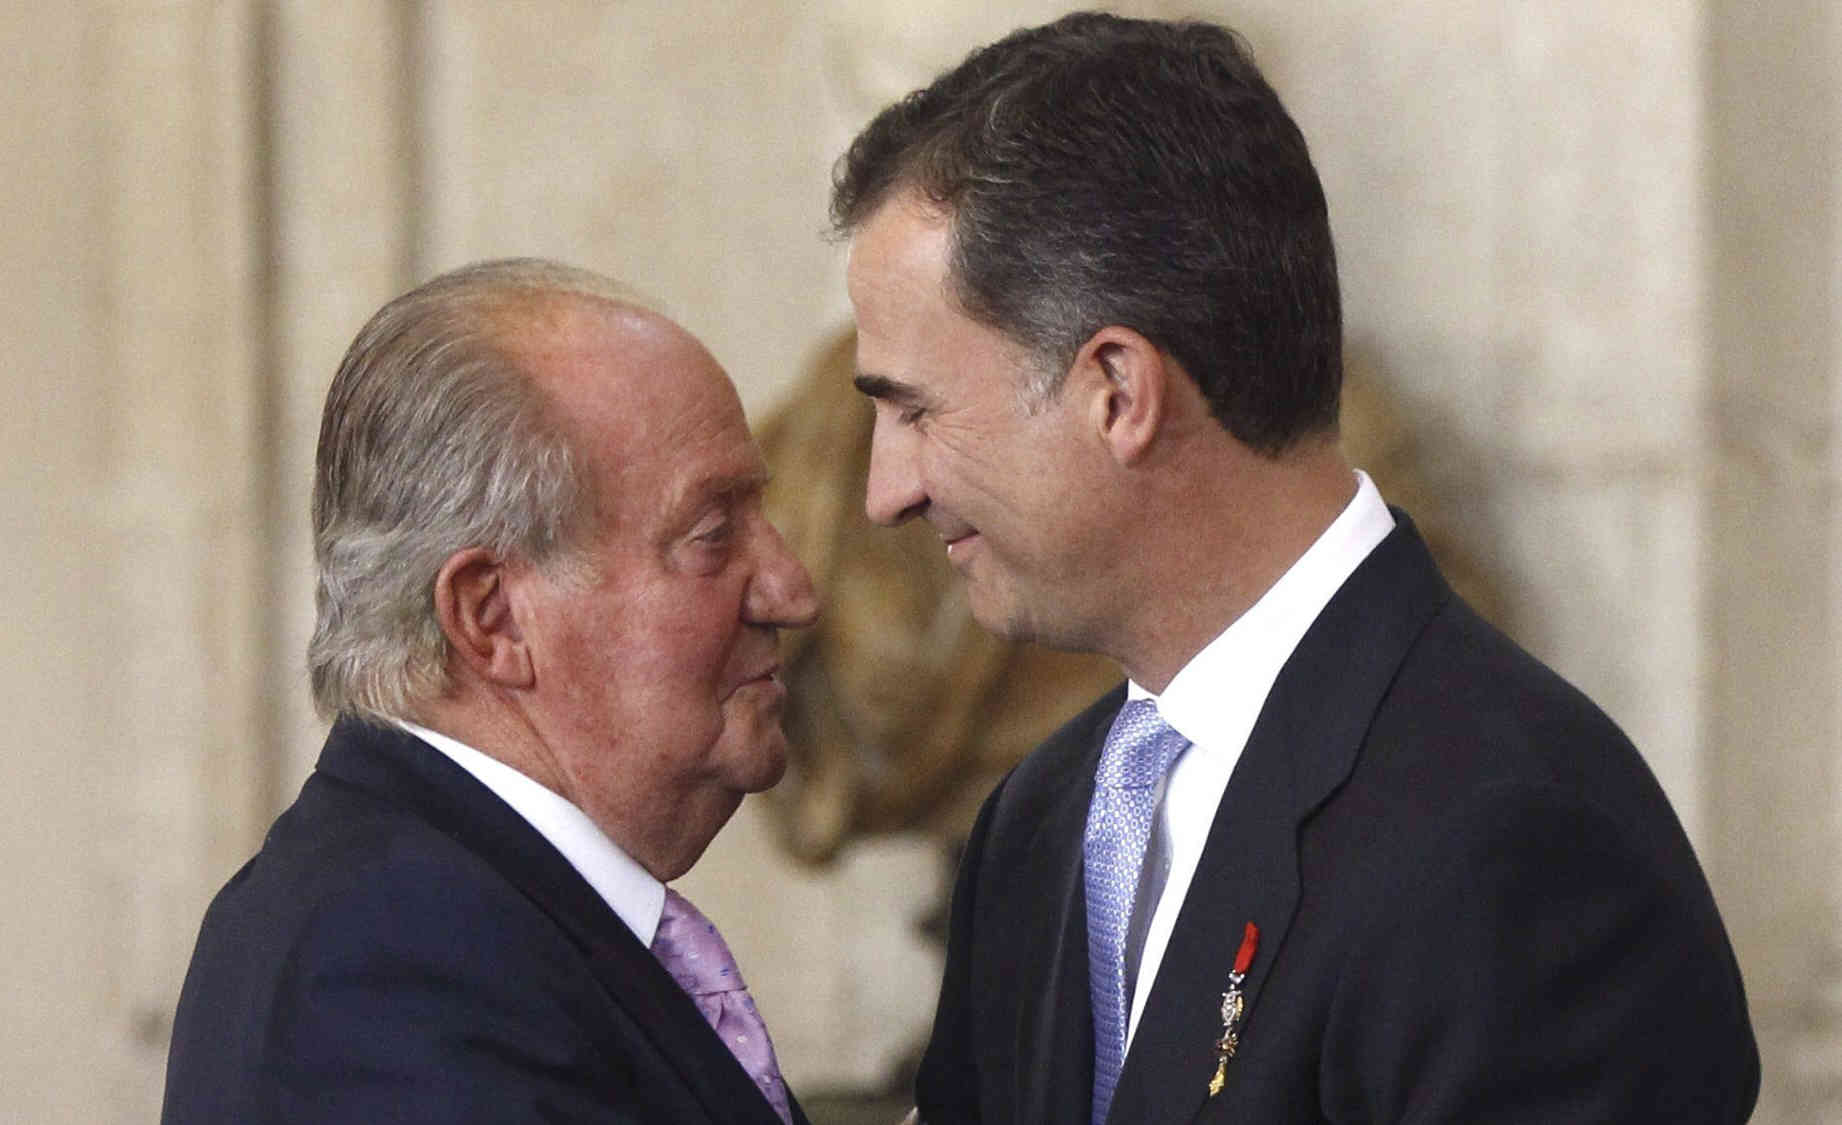 King Juan Carlos I of Spain abdicates in favor of his son, Felipe VI, in 2014 (by Alvarado, Fernando / EFE)